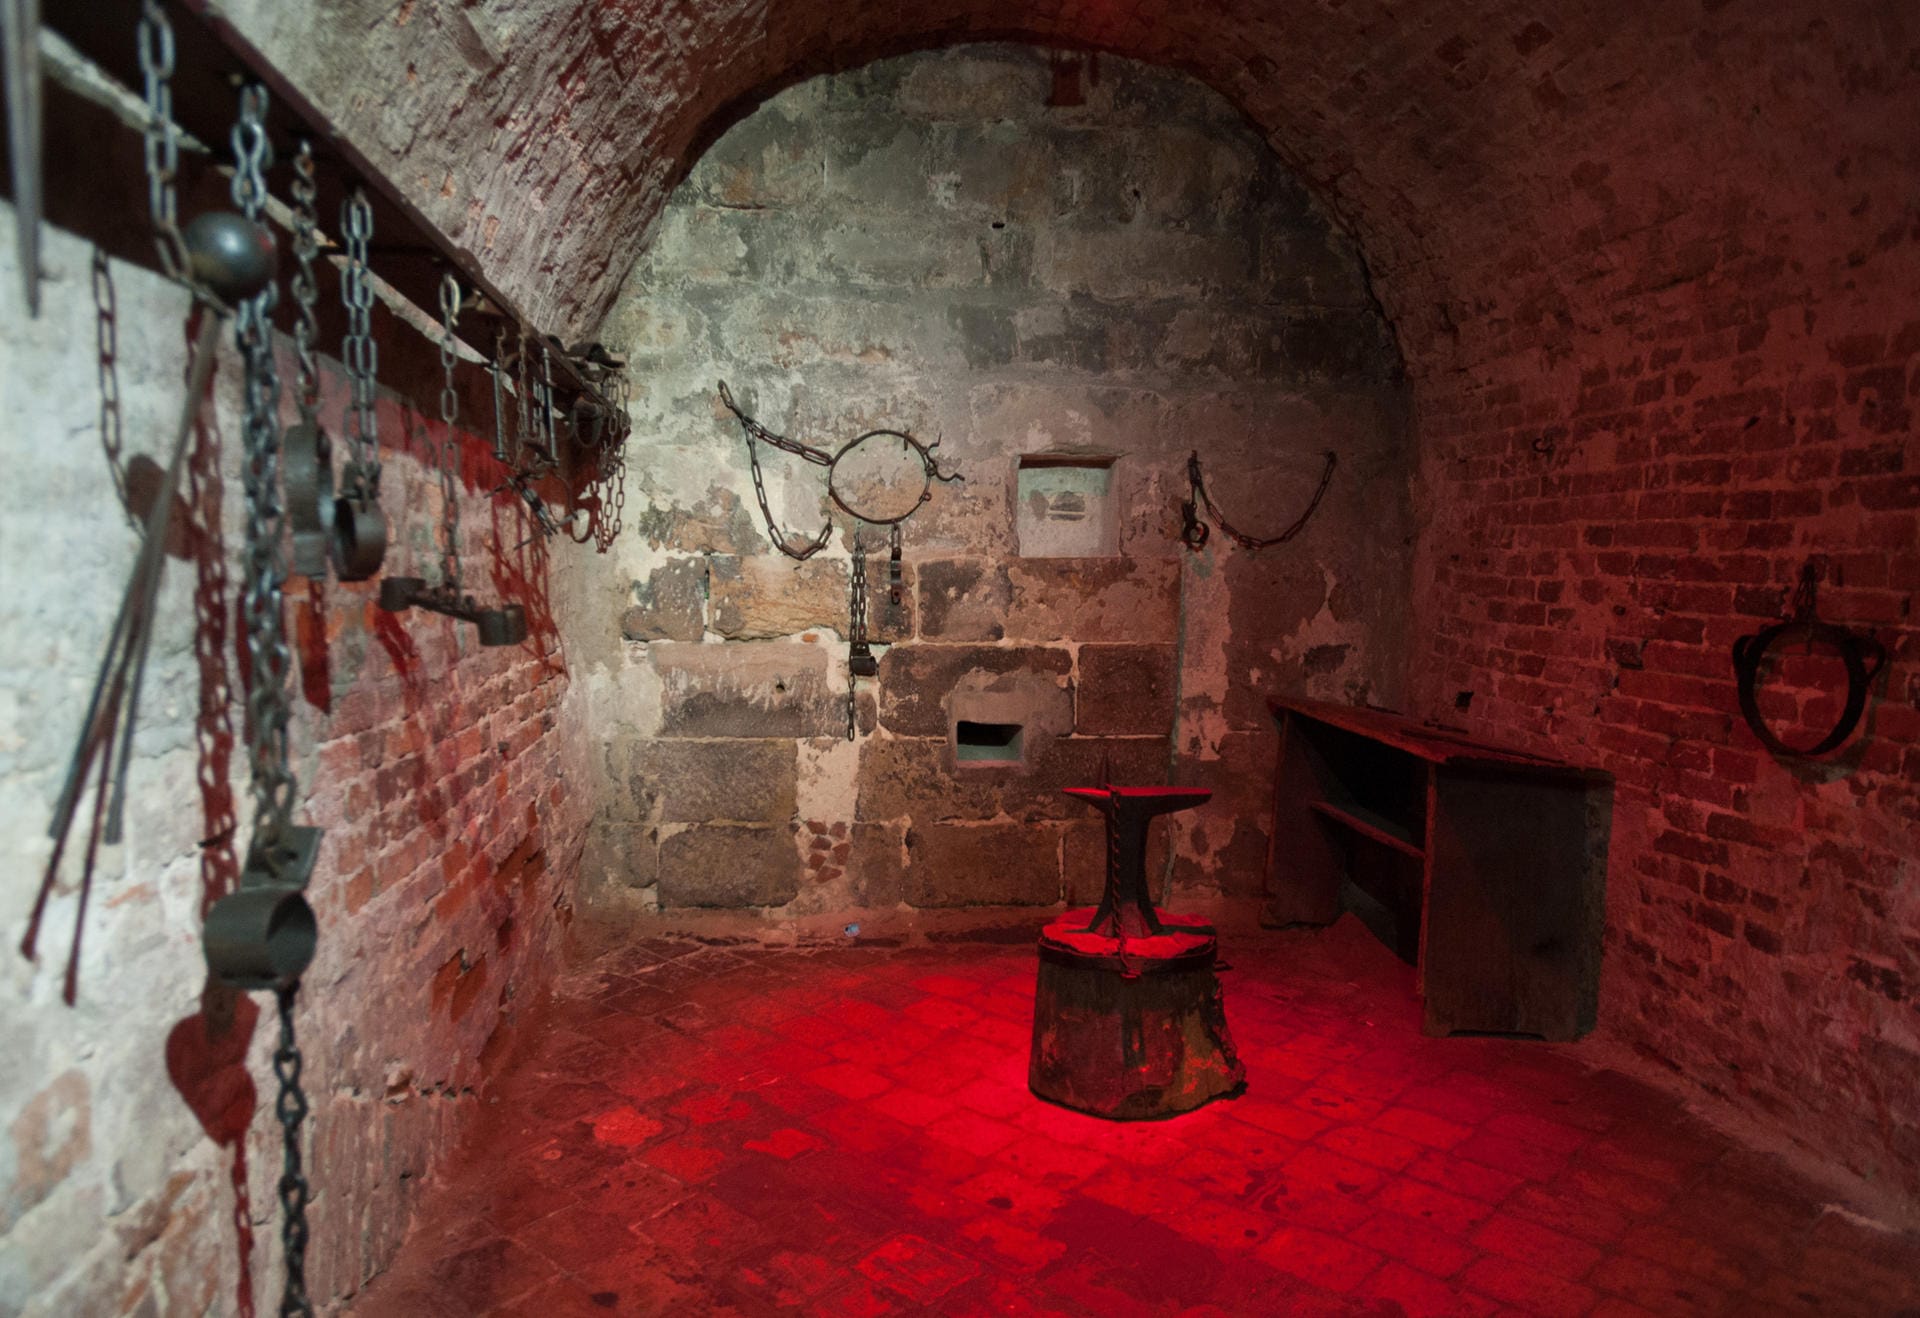 Auch Nürnberg hat Orte des Grauens - die sogenannten Lochgefängnisse. Diese wurden im 14. Jahrhundert eingerichtet und dienten als Verwahrungsort der Angeklagten bis zur Urteilsvollstreckung.